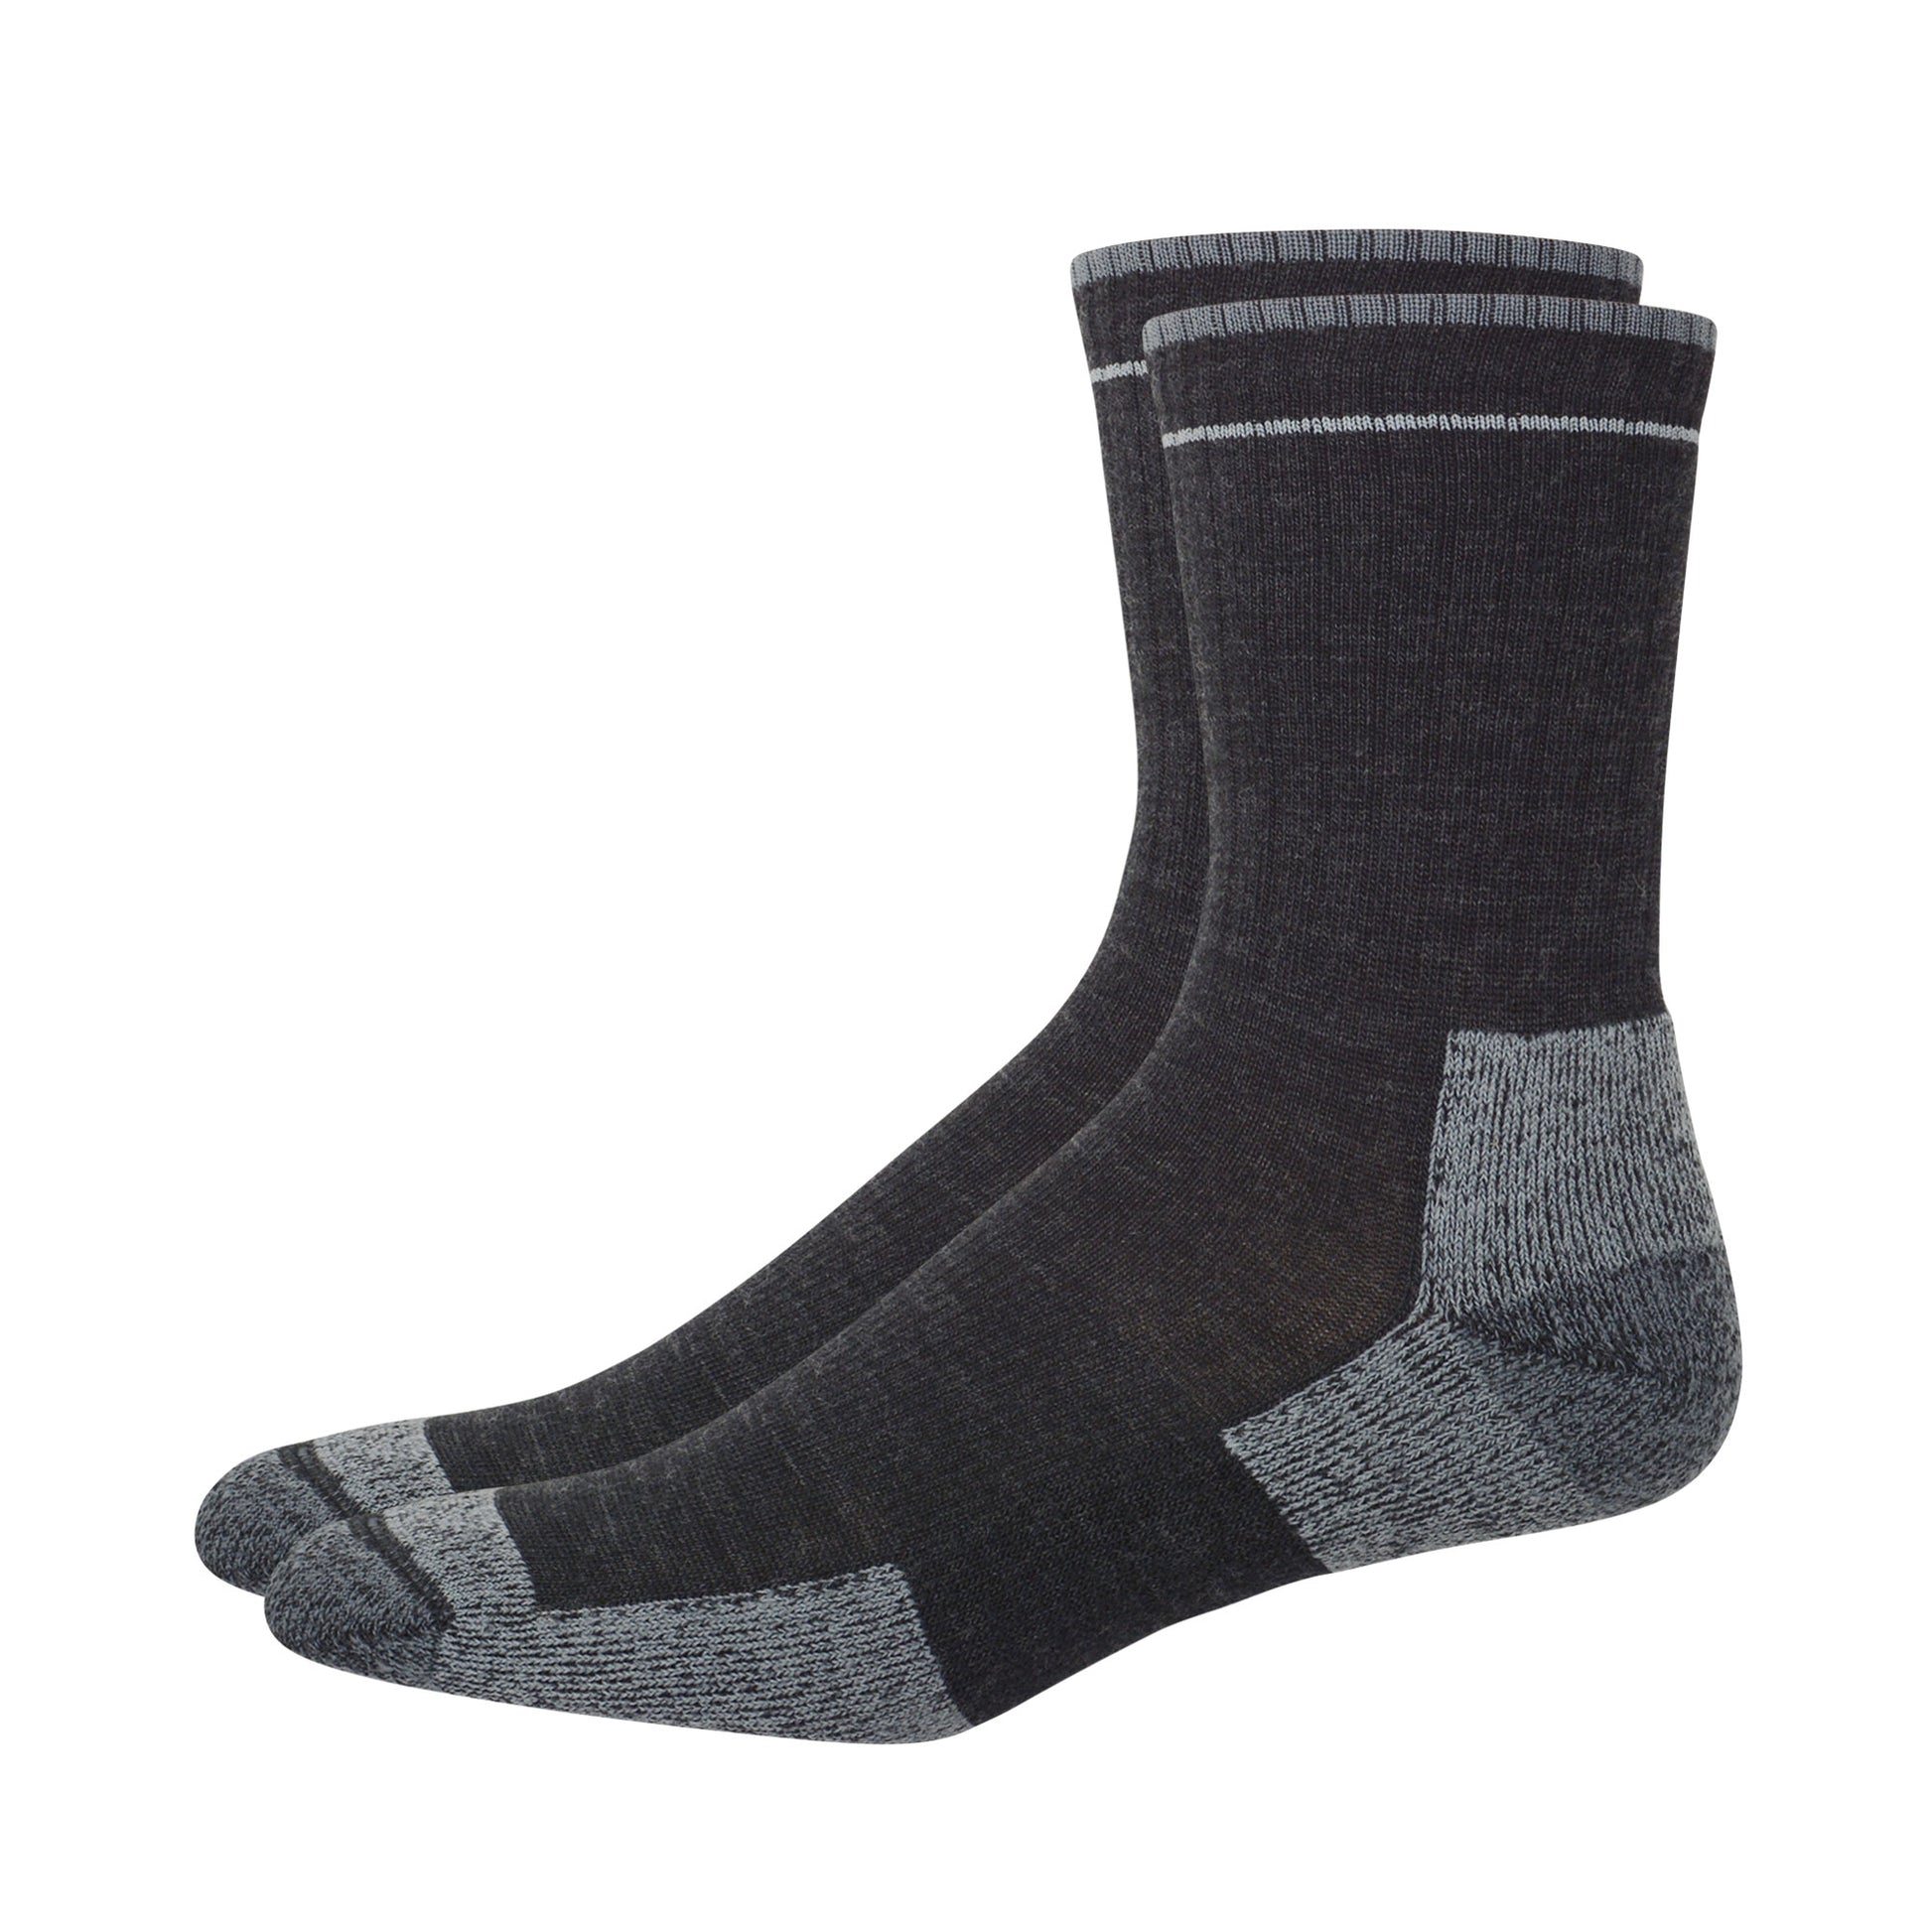 Pair of dark gray merino wool socks. 